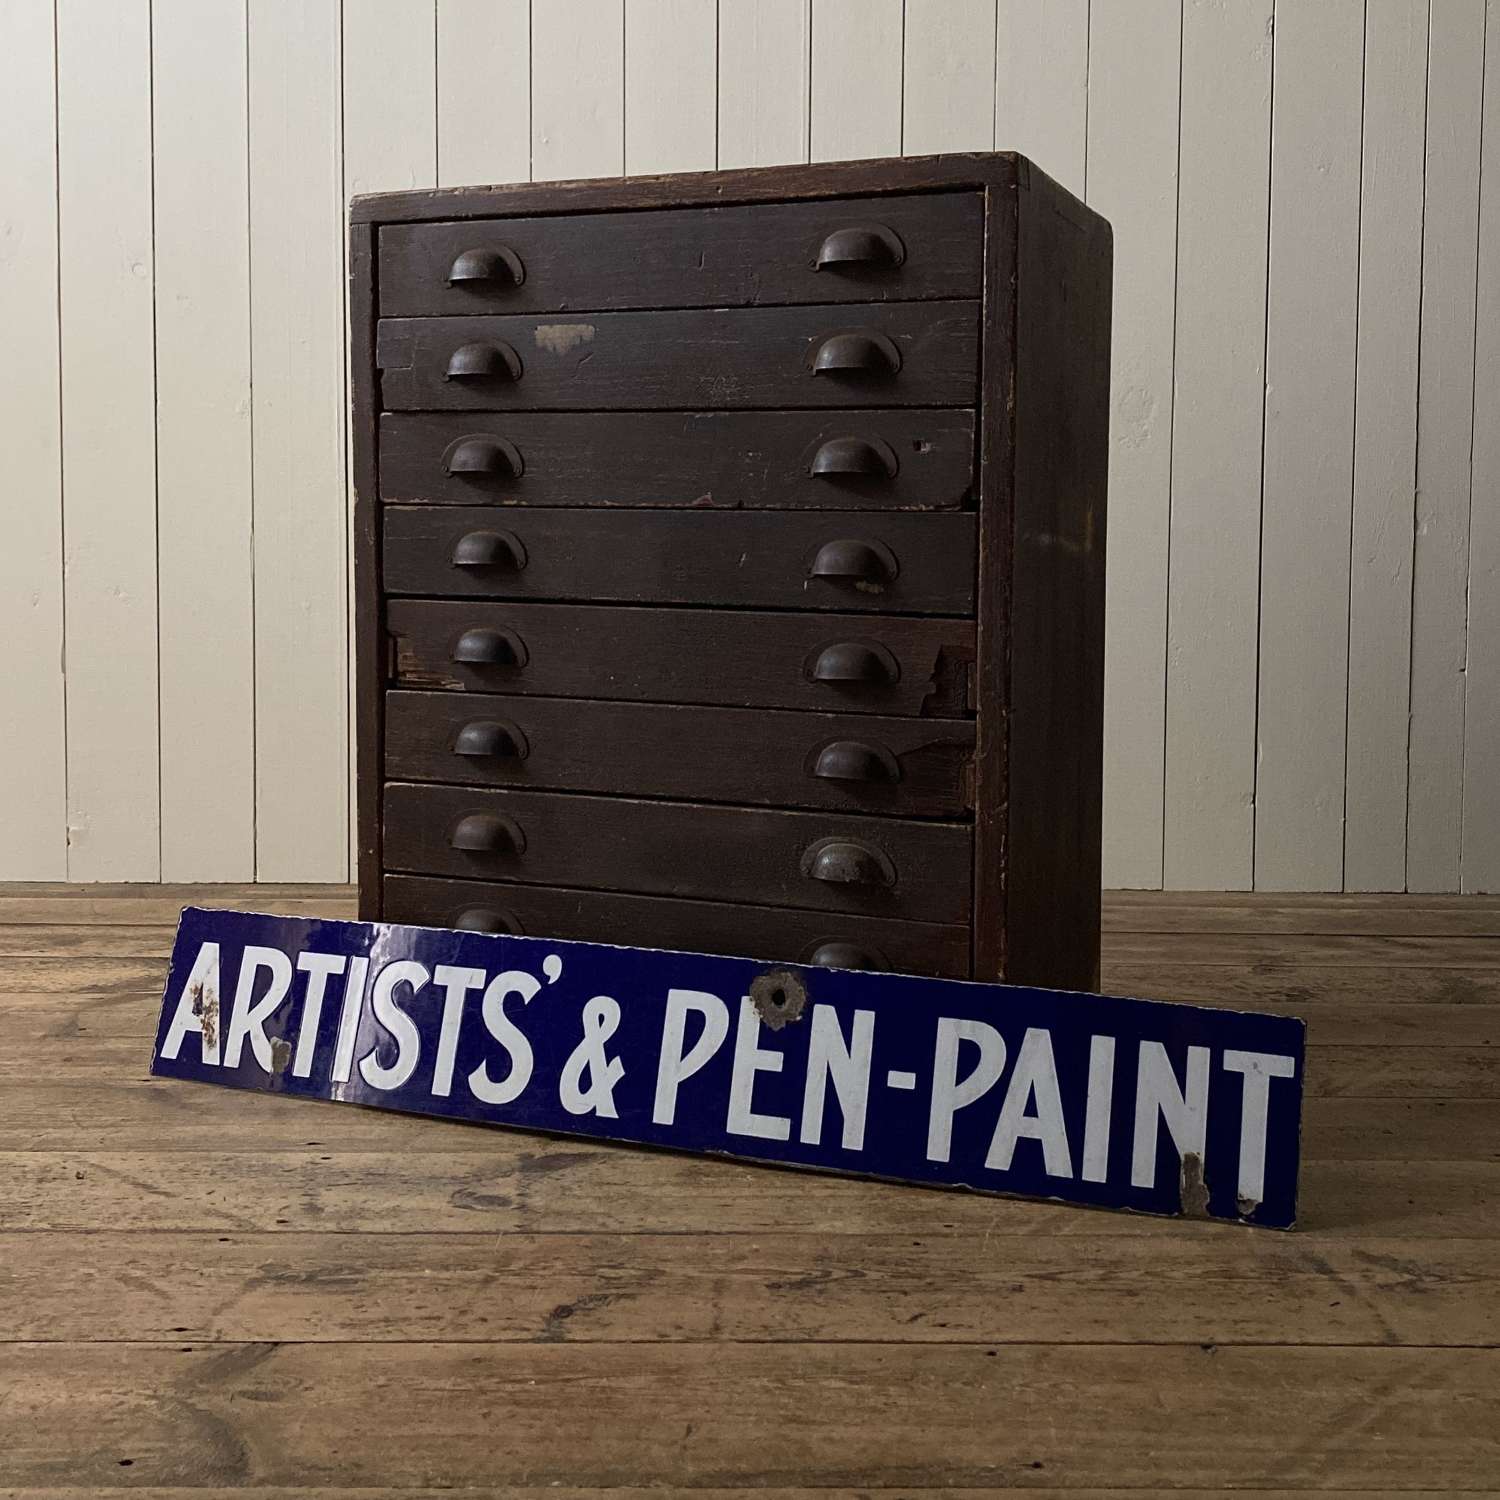 Enamel artists & pen-paint sign